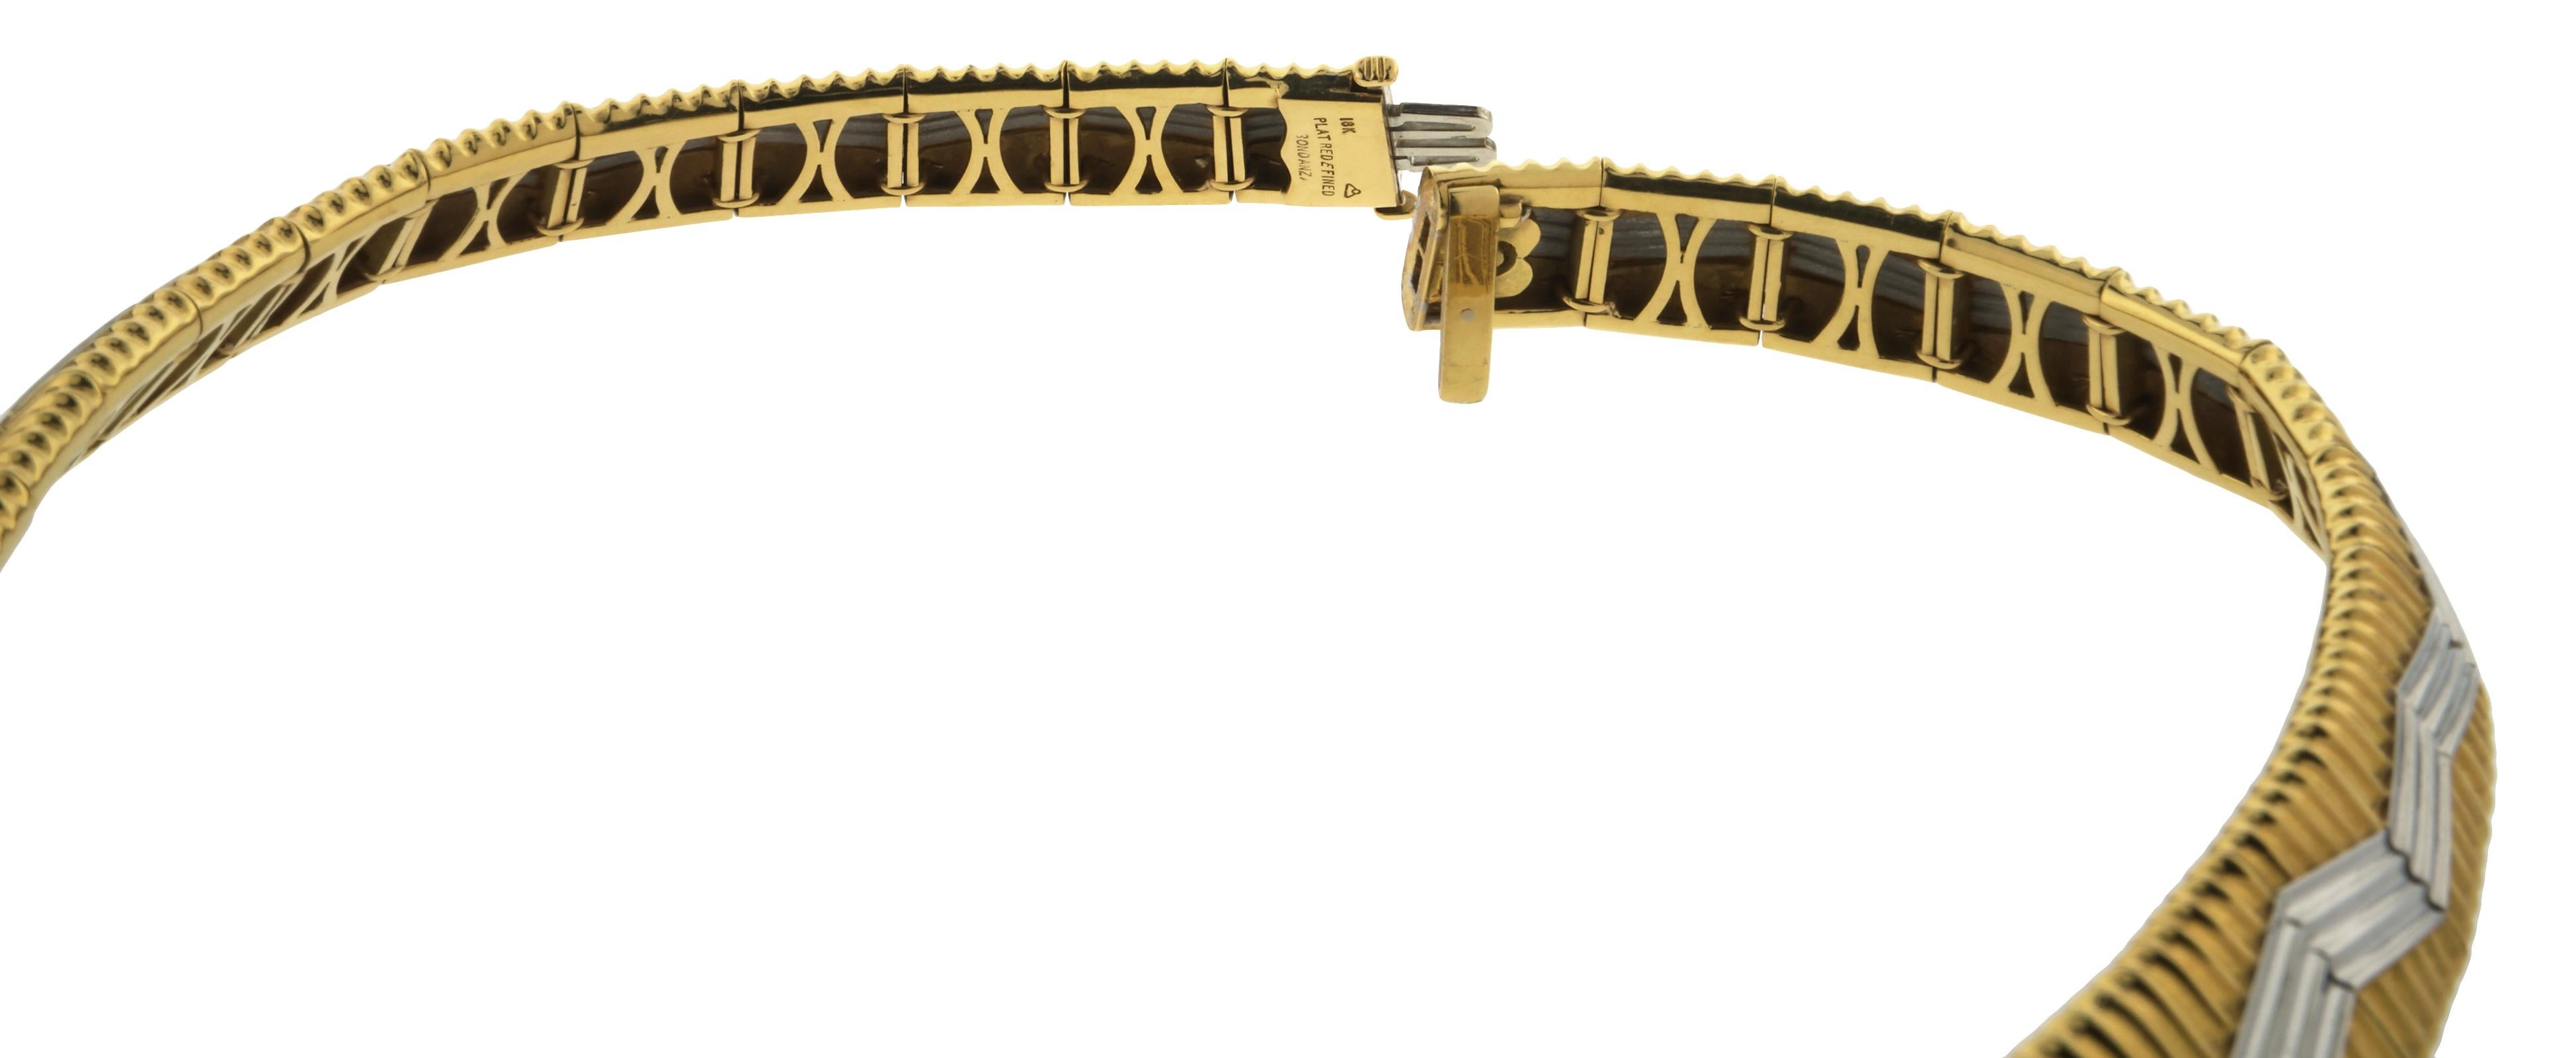 Magnifique collier deux tons de Micheal Bondaza. Avec son design iconique. Le collier mesure 17 pouces de long, est en platine et en or jaune 18 carats et pèse 121,7 DWT (environ 189,26 grammes). 